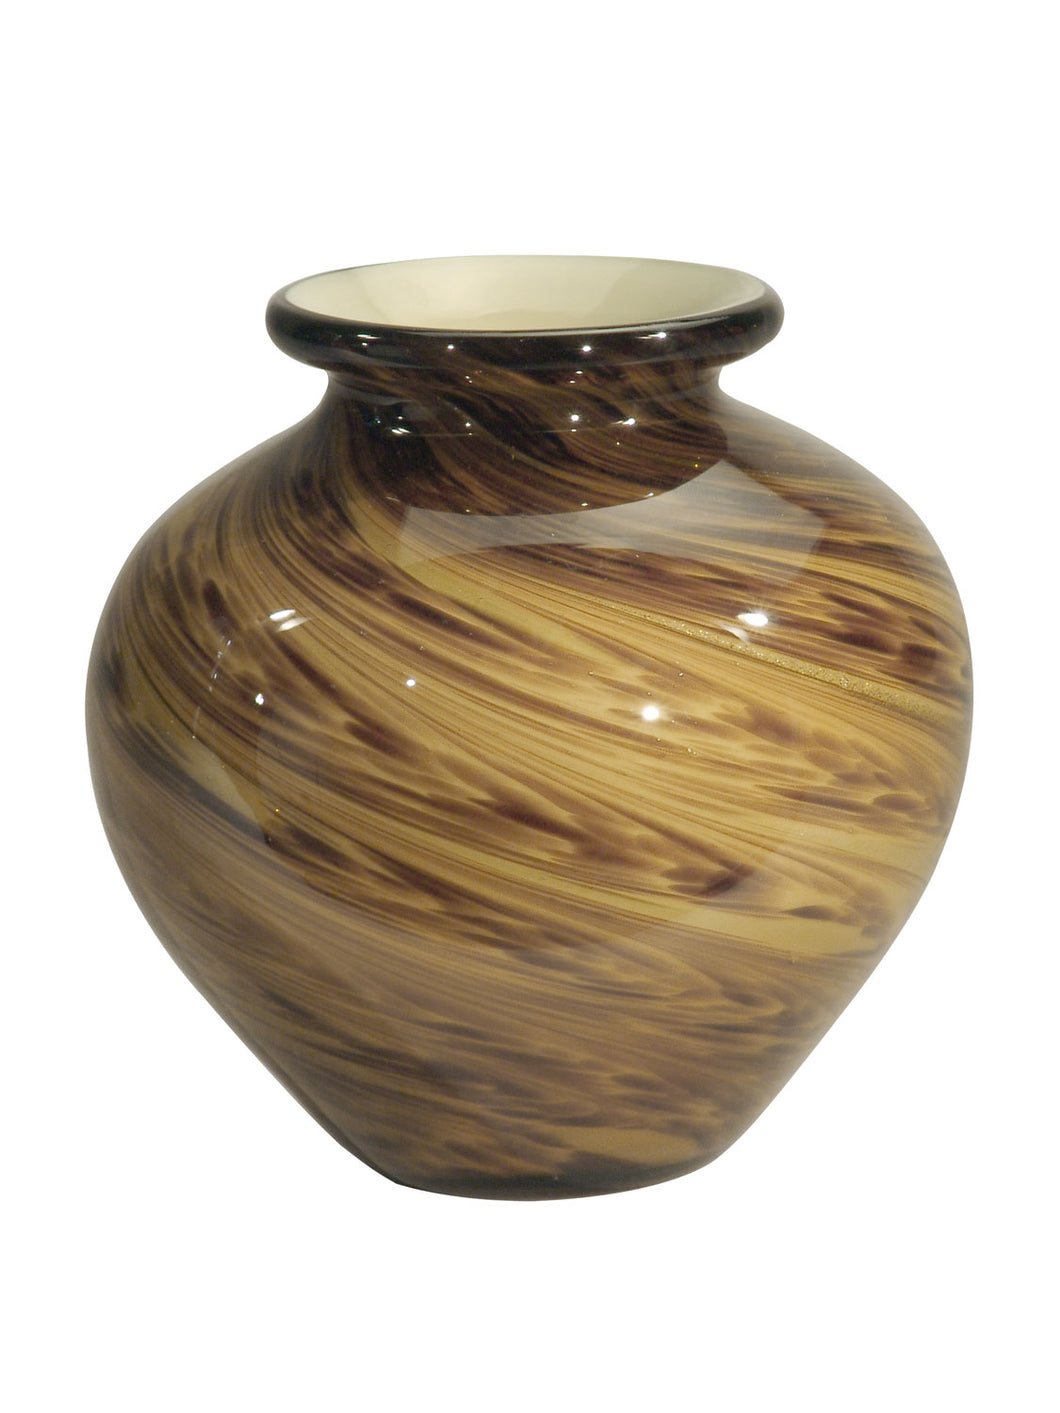 Dale Tiffany - PG80148 - Vase - San Felipe